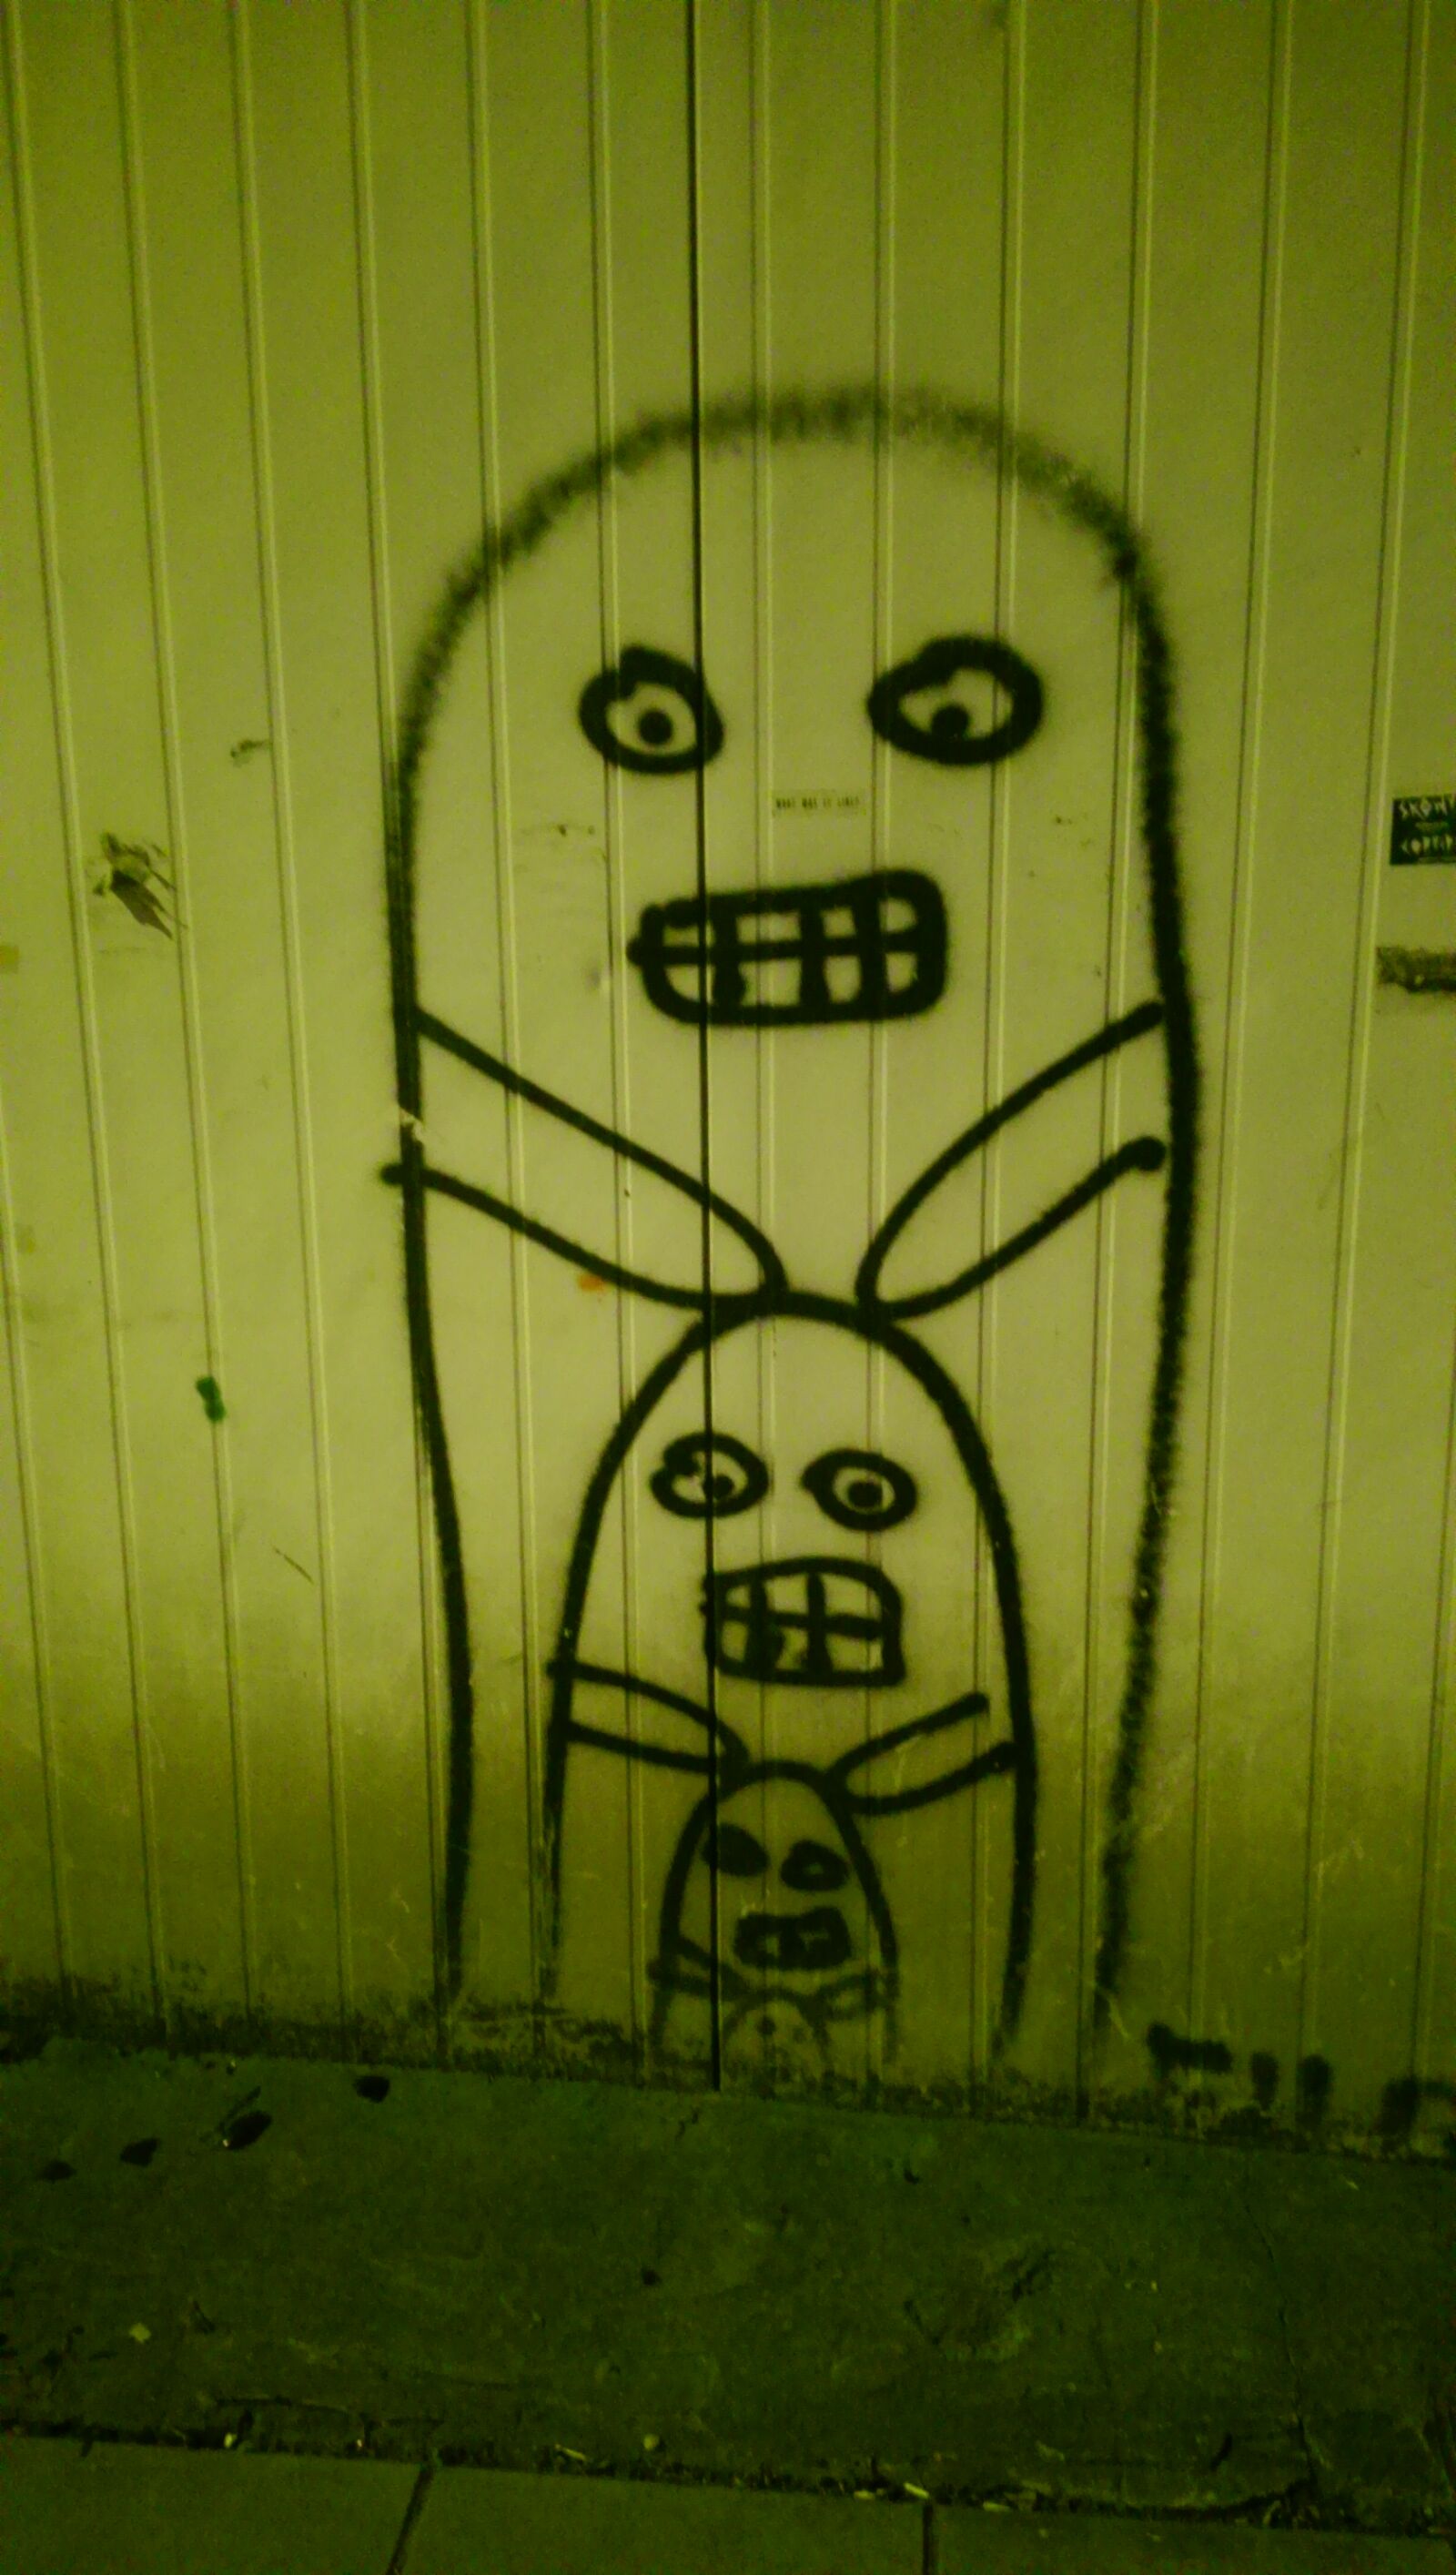 HTC ONE MINI sample photo. Graffiti, night photography